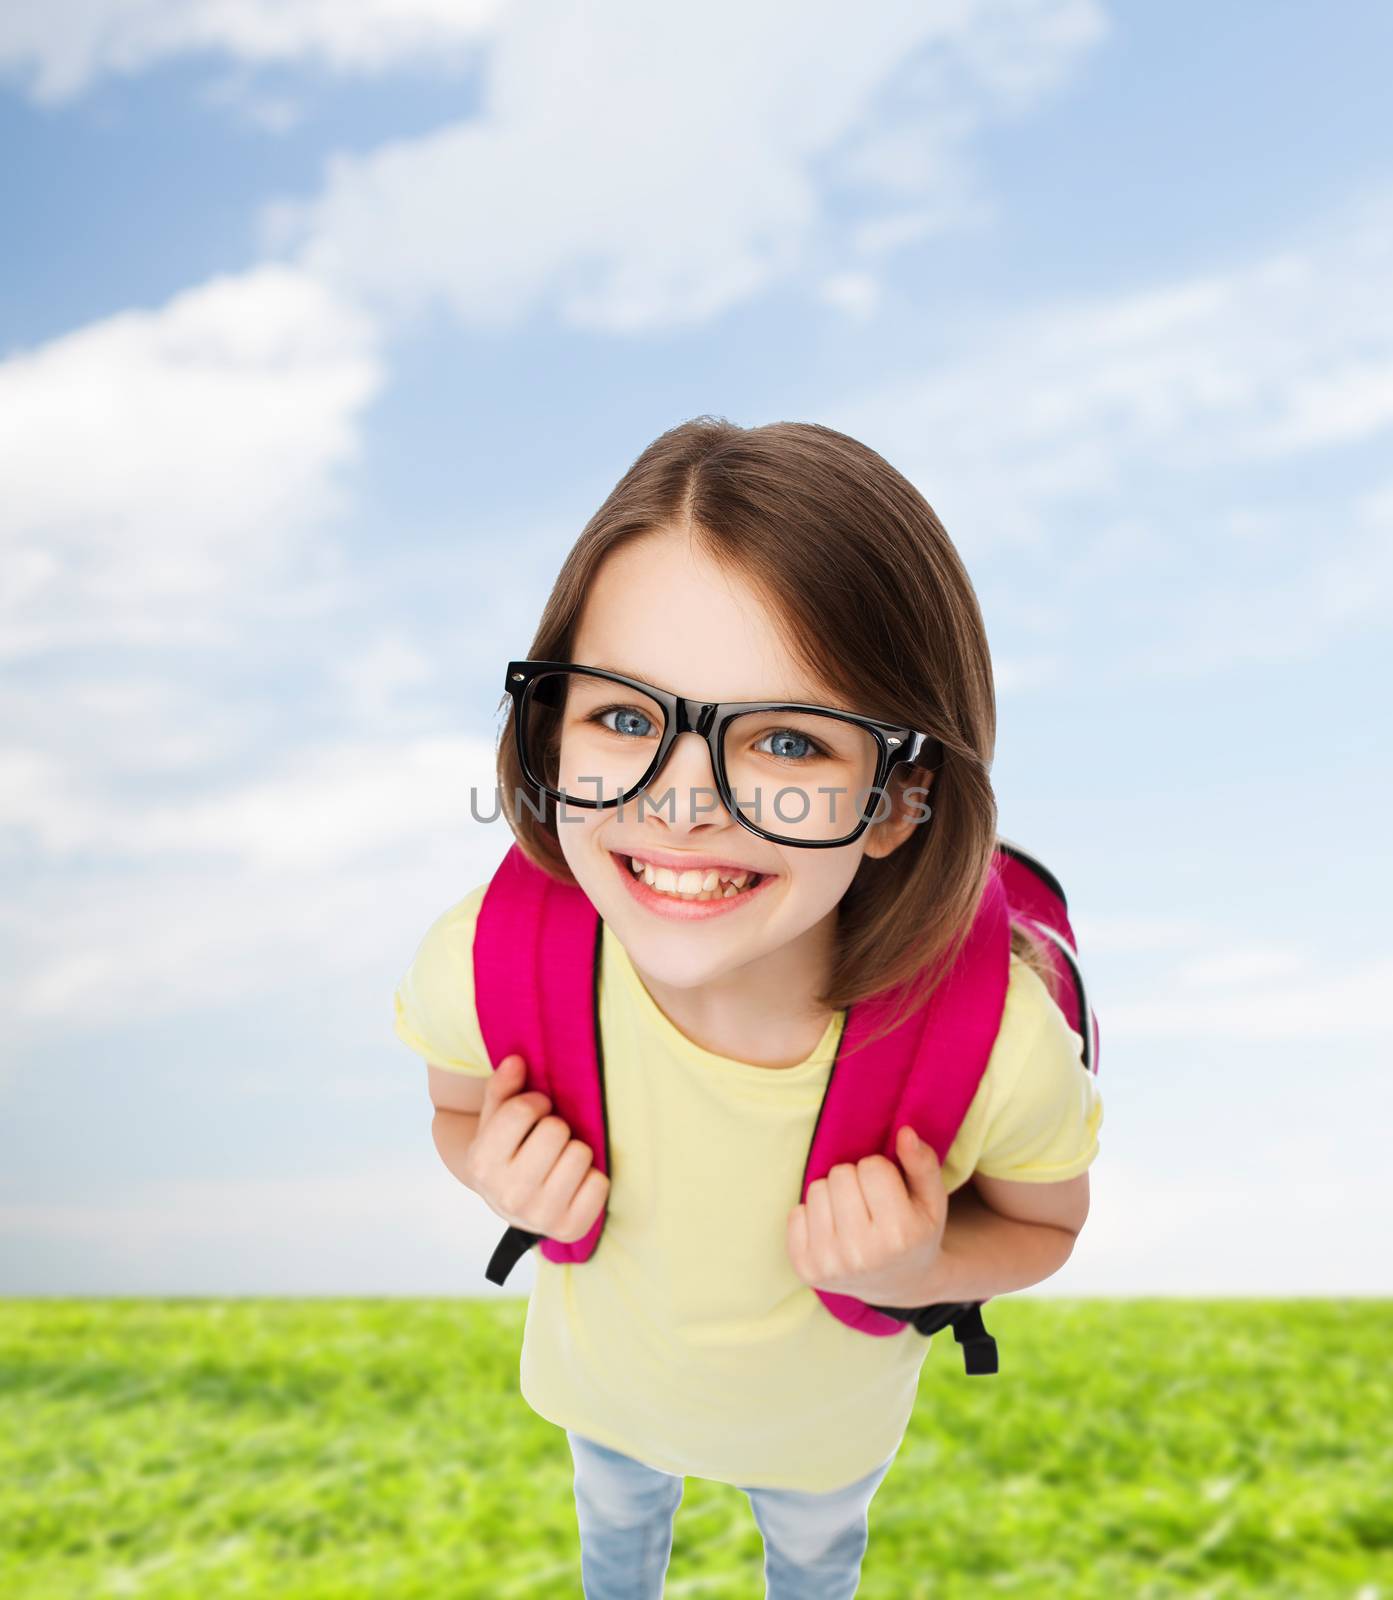 happy smiling teenage girl in eyeglasses with bag by dolgachov